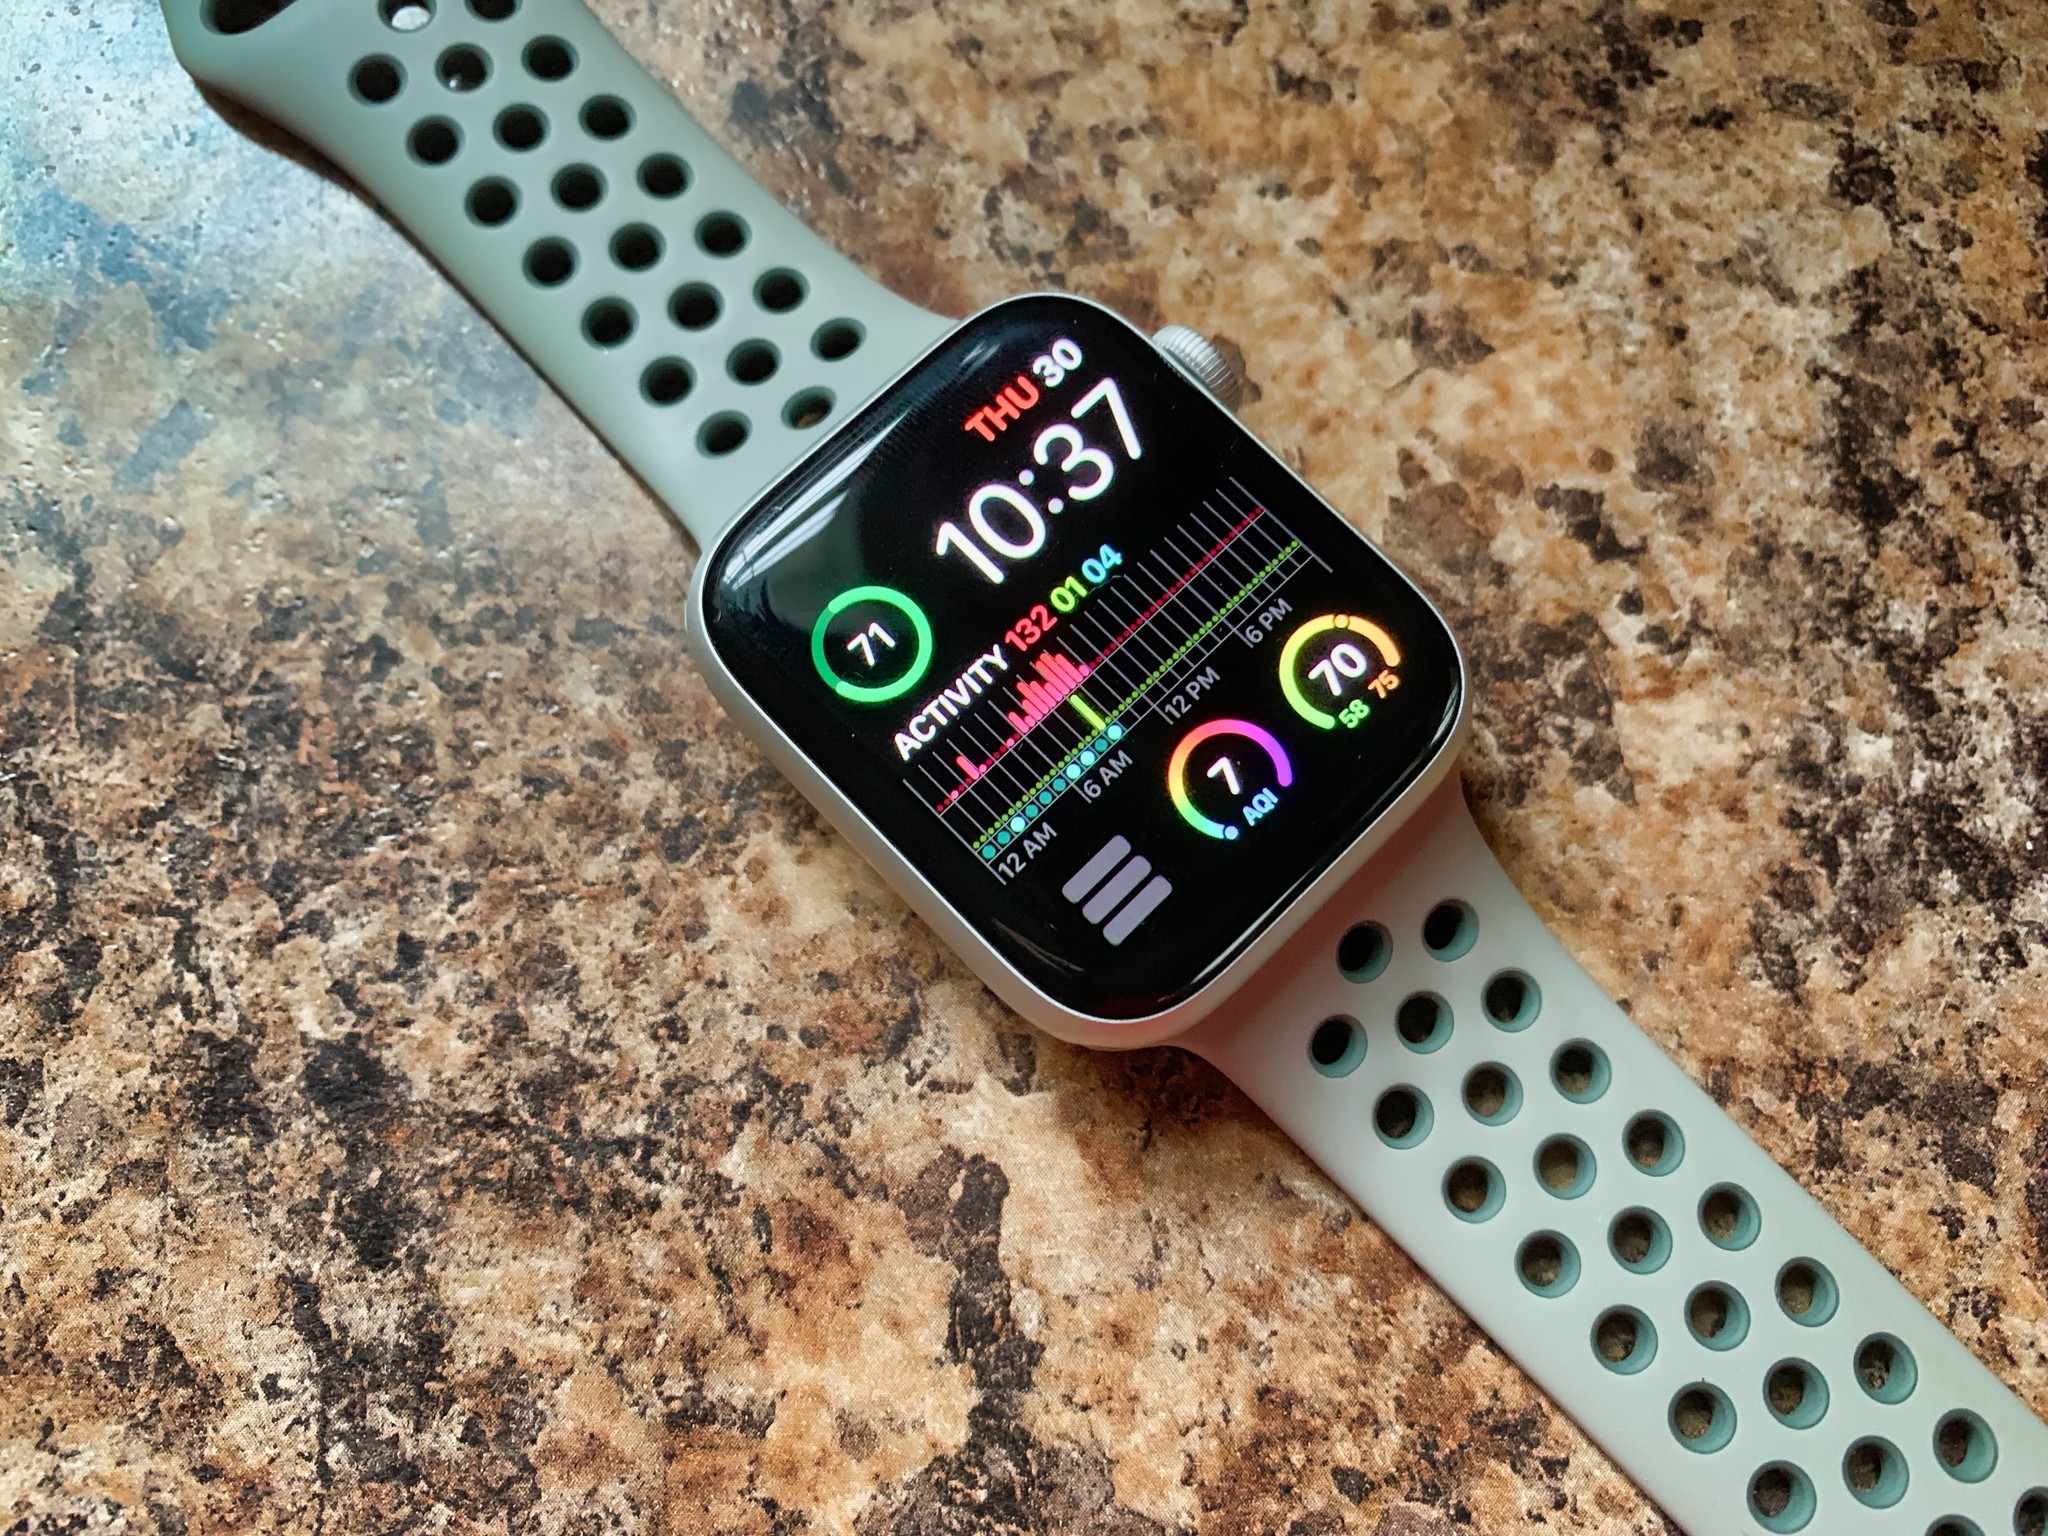 Apple watch подключить к iphone. Картинки на эпл вотч на заставку. Станция для подключения Apple watch к компьютеру купить.